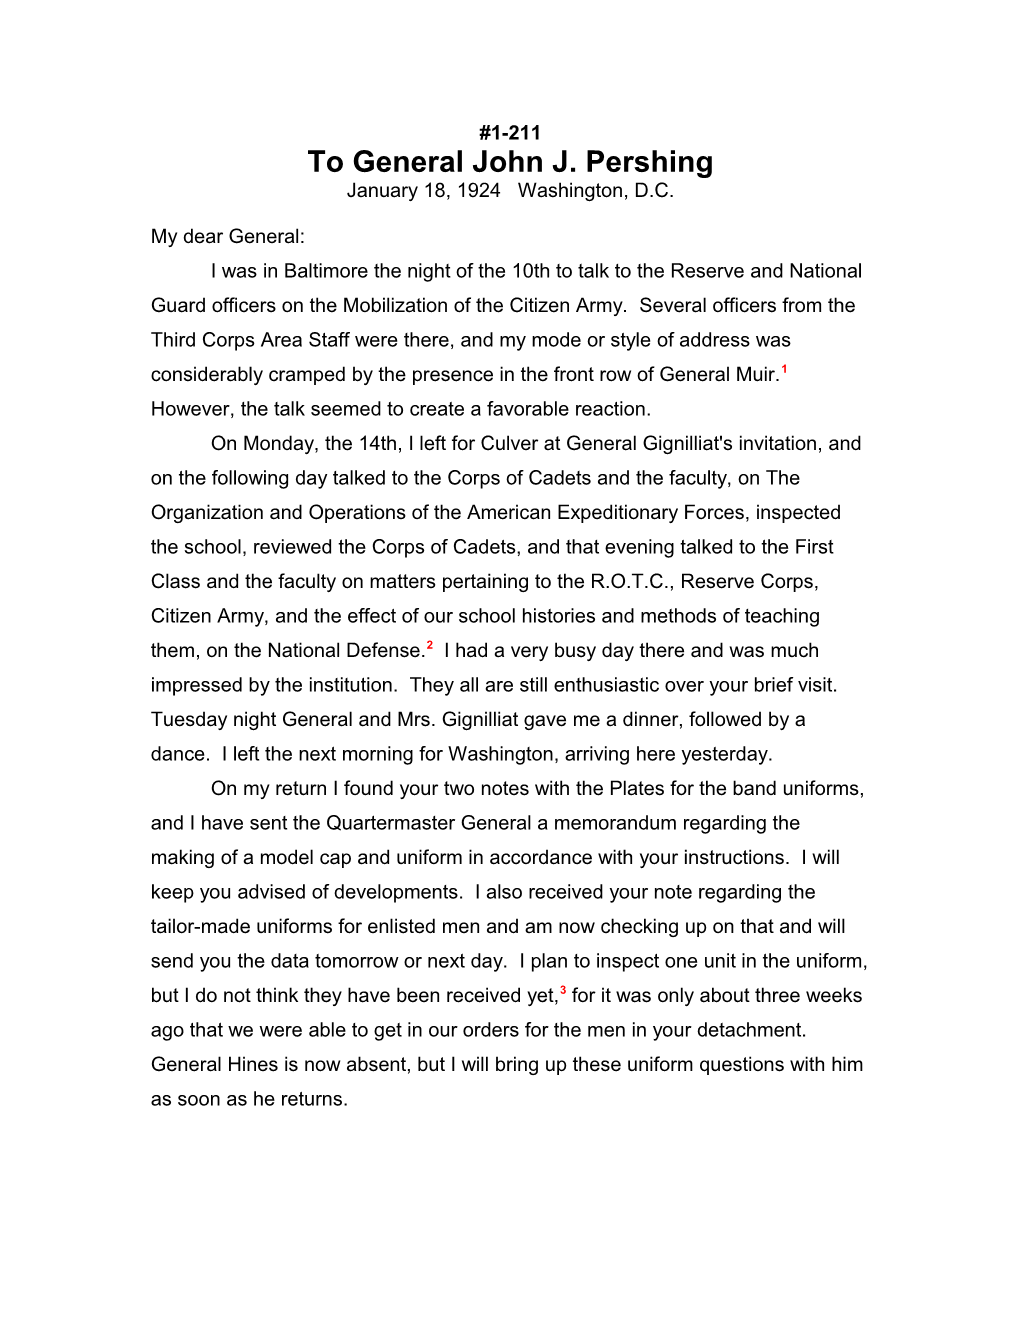 To General John J. Pershing